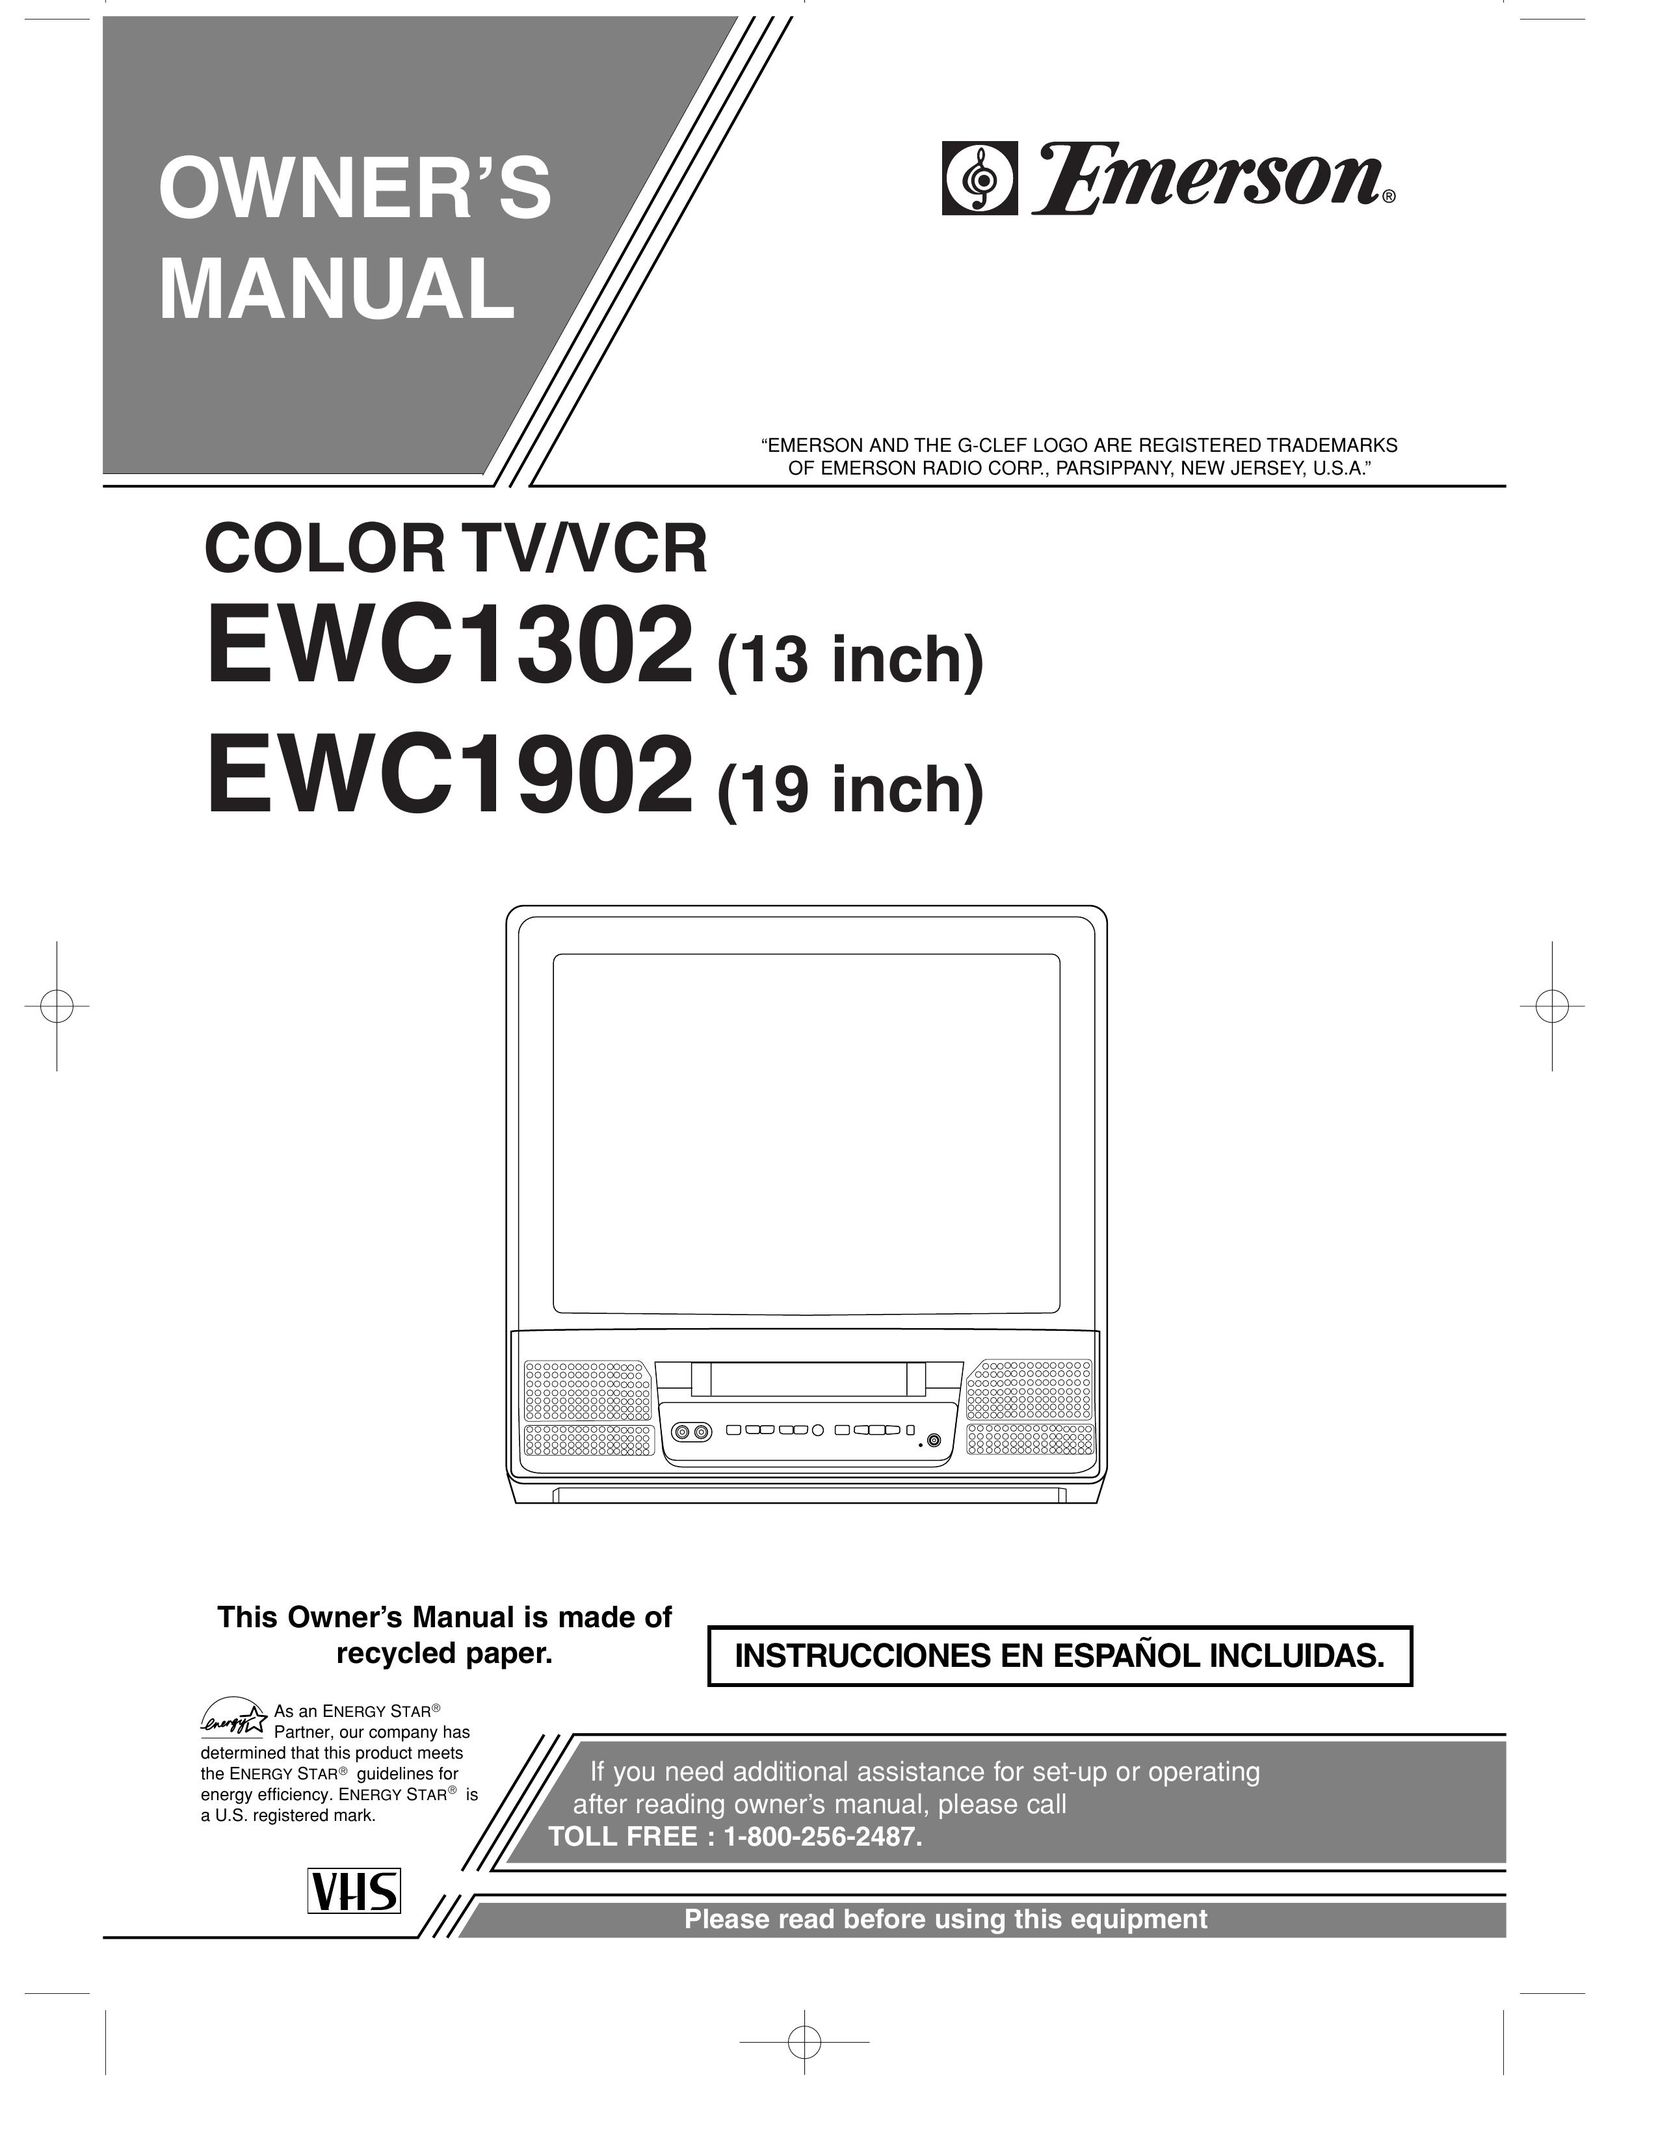 Emerson EWC1902 TV VCR Combo User Manual